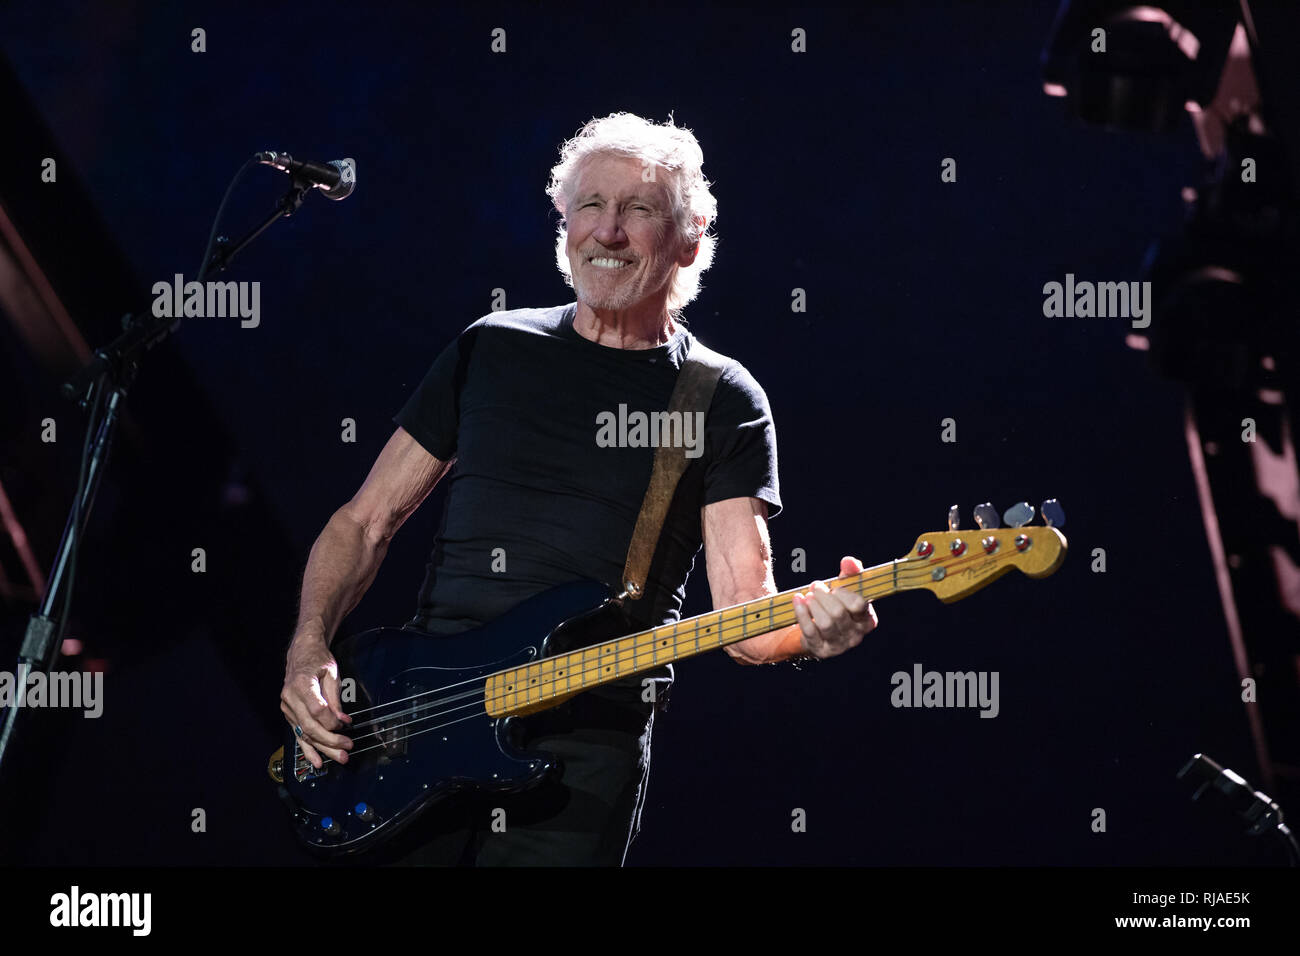 Lucca, Italia. 11 de julio de 2018. Italia, Lucca: cantante Roger Waters (Pink Floyd) realiza en vivo en el escenario en el Festival de Verano de Lucca 2018 para "Us + ellos" Tour 2018 Foto de stock